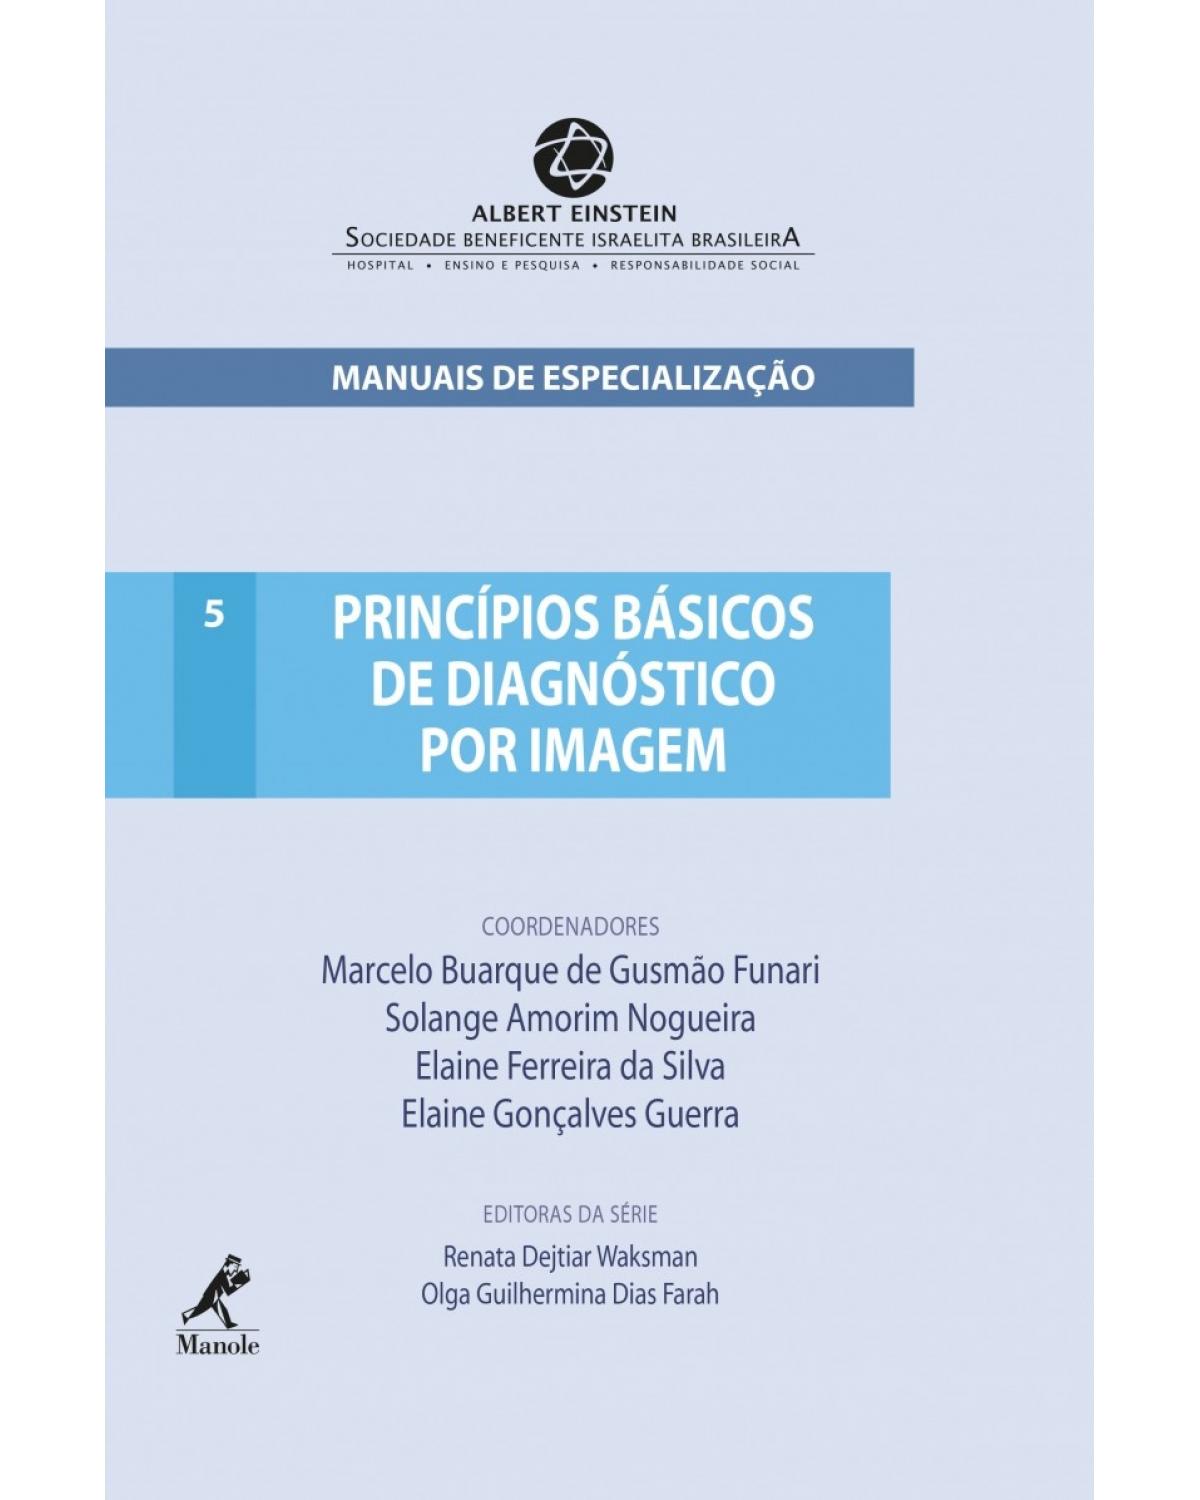 Princípios básicos de diagnóstico por imagem - Volume 5:  - 1ª Edição | 2012